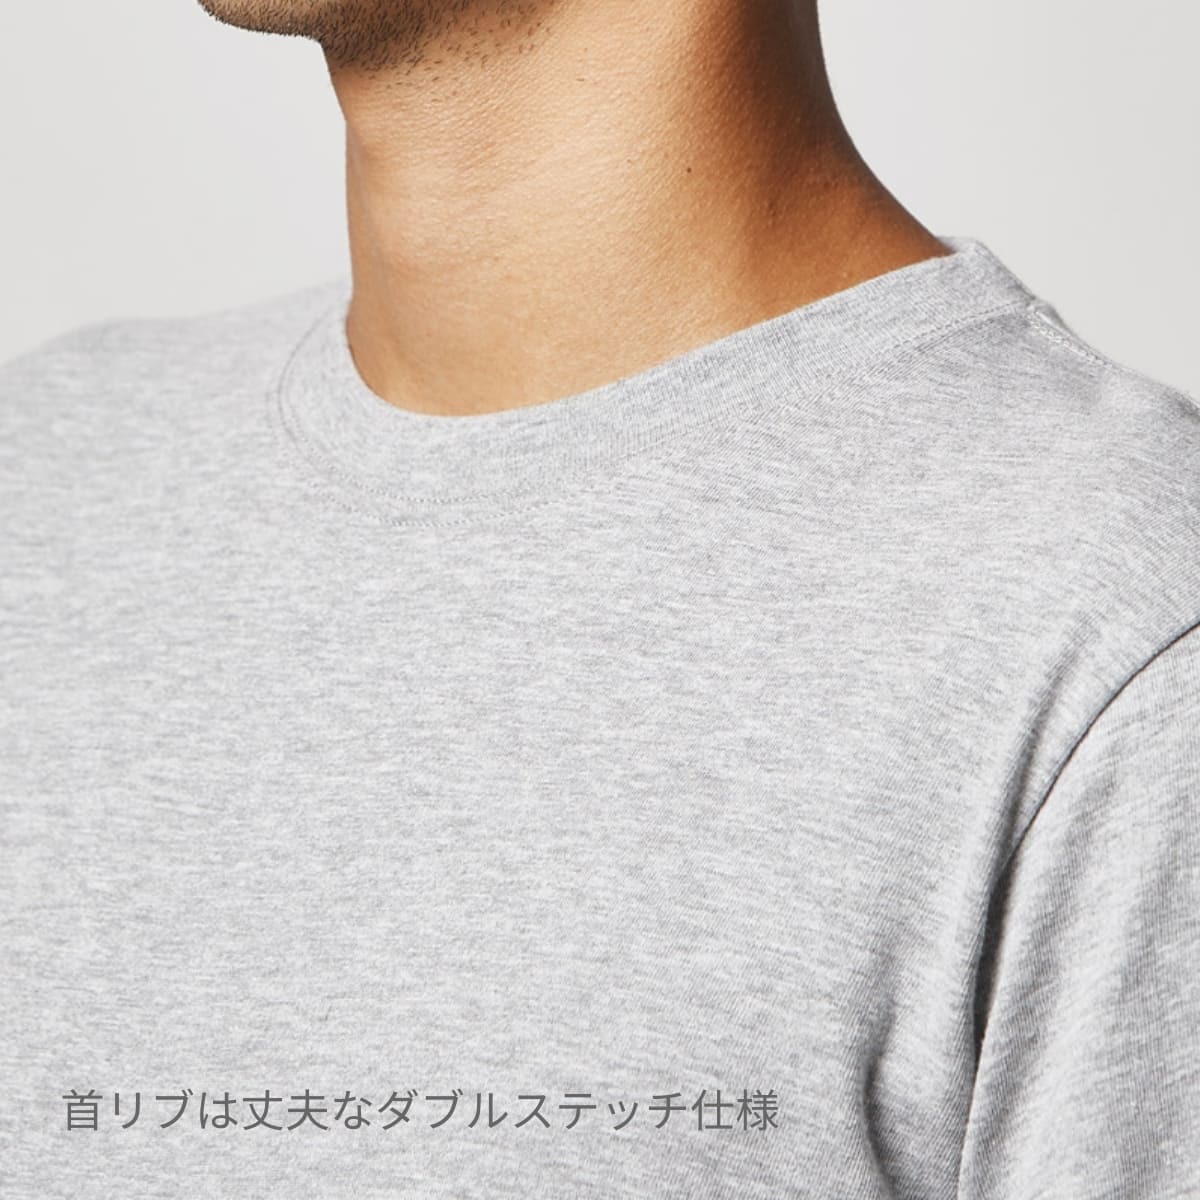 【リンガーTシャツ】ラグラン袖 プリントT 裾リブ M アイボリー